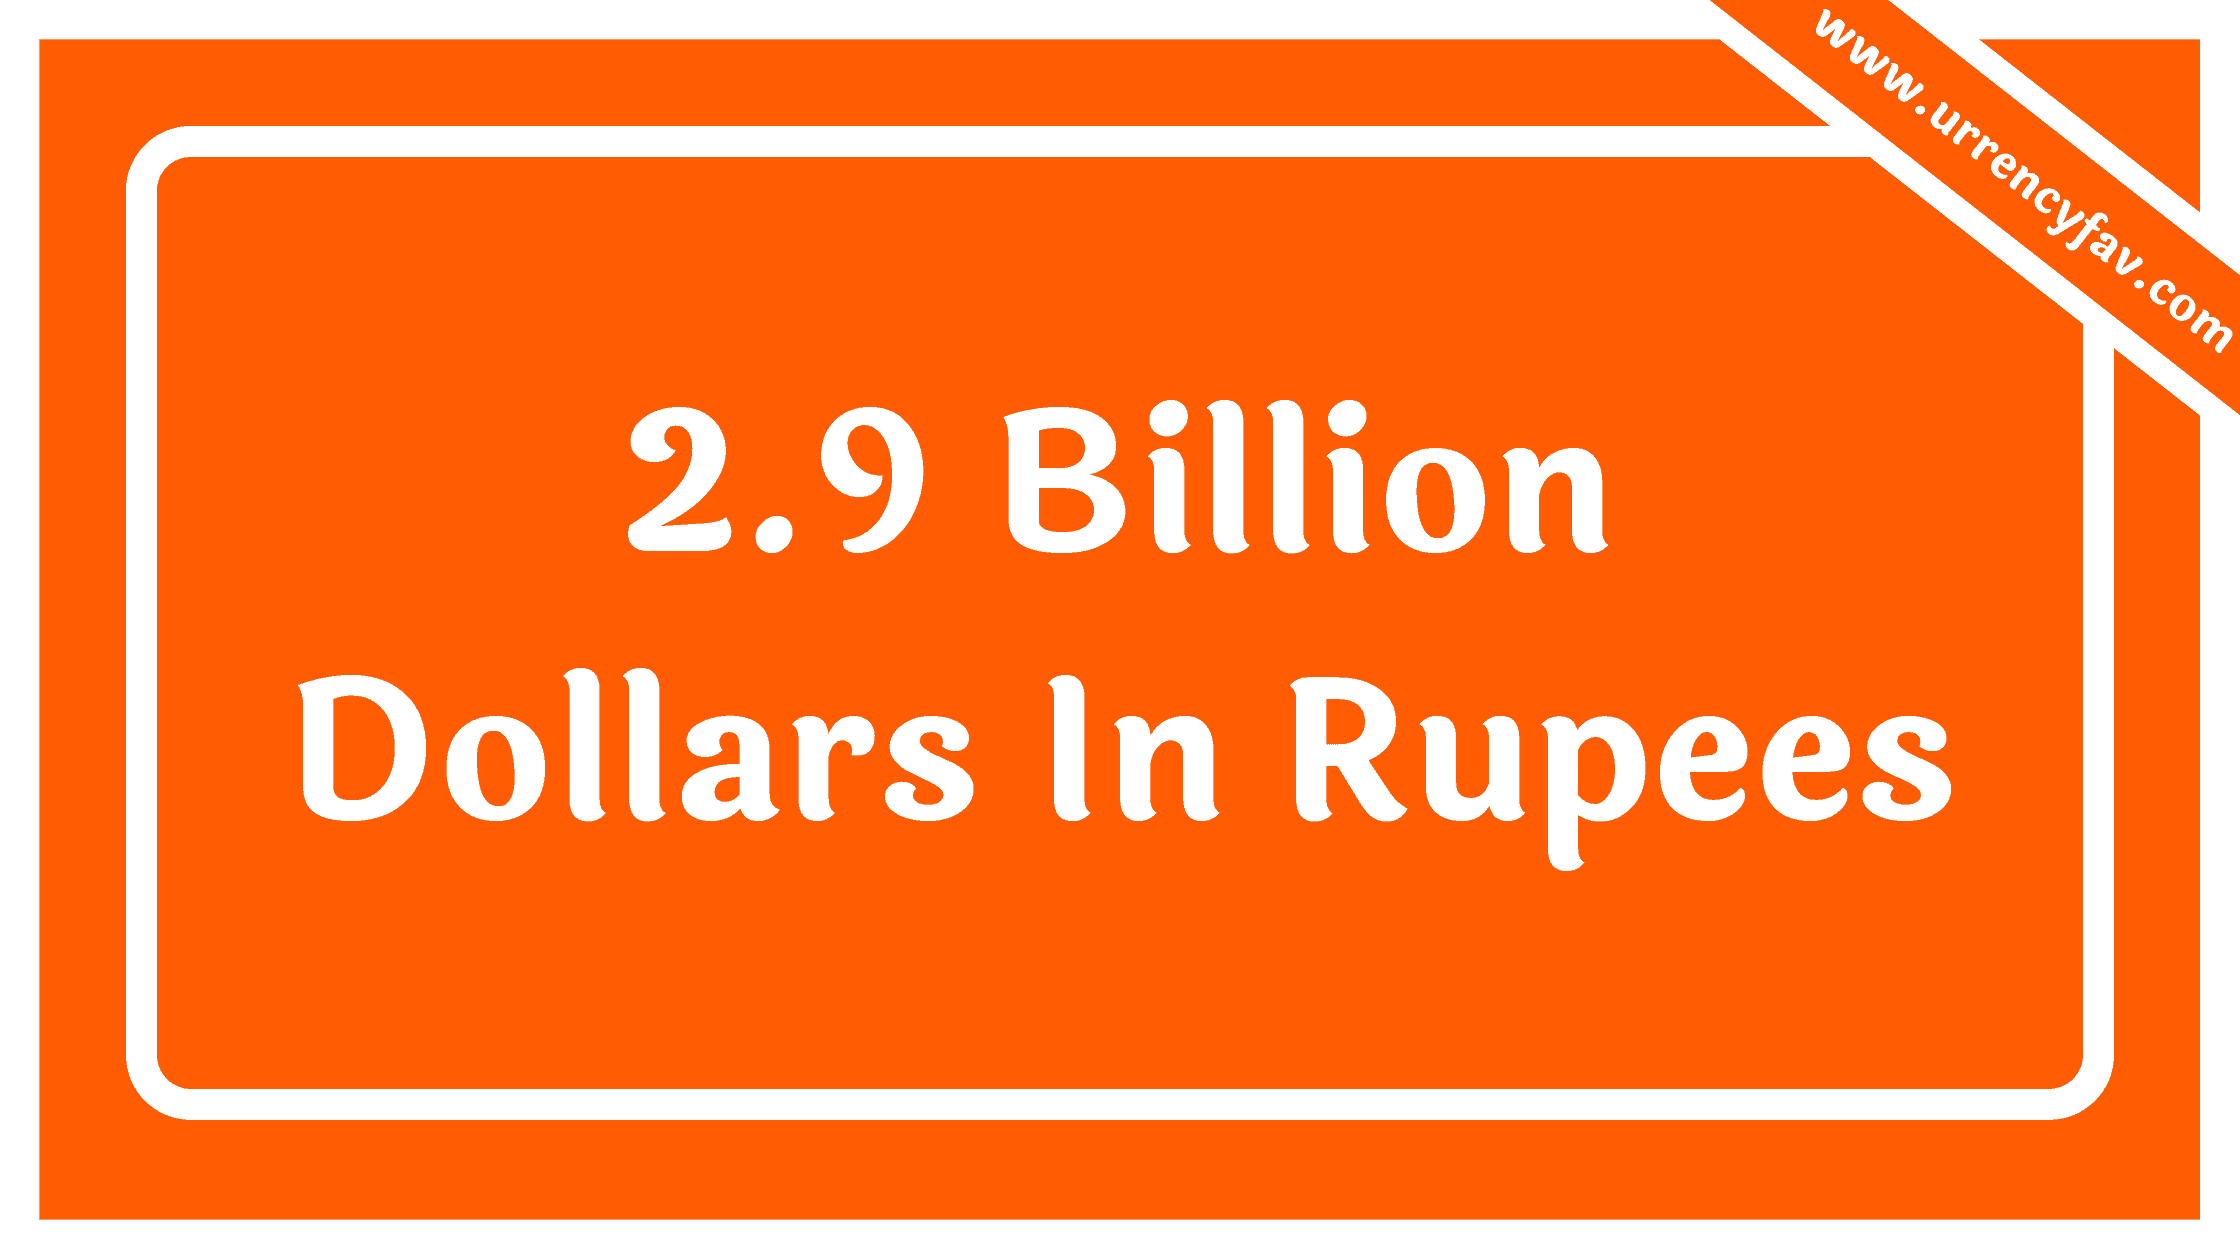 2.9 Billion Dollars In Rupees